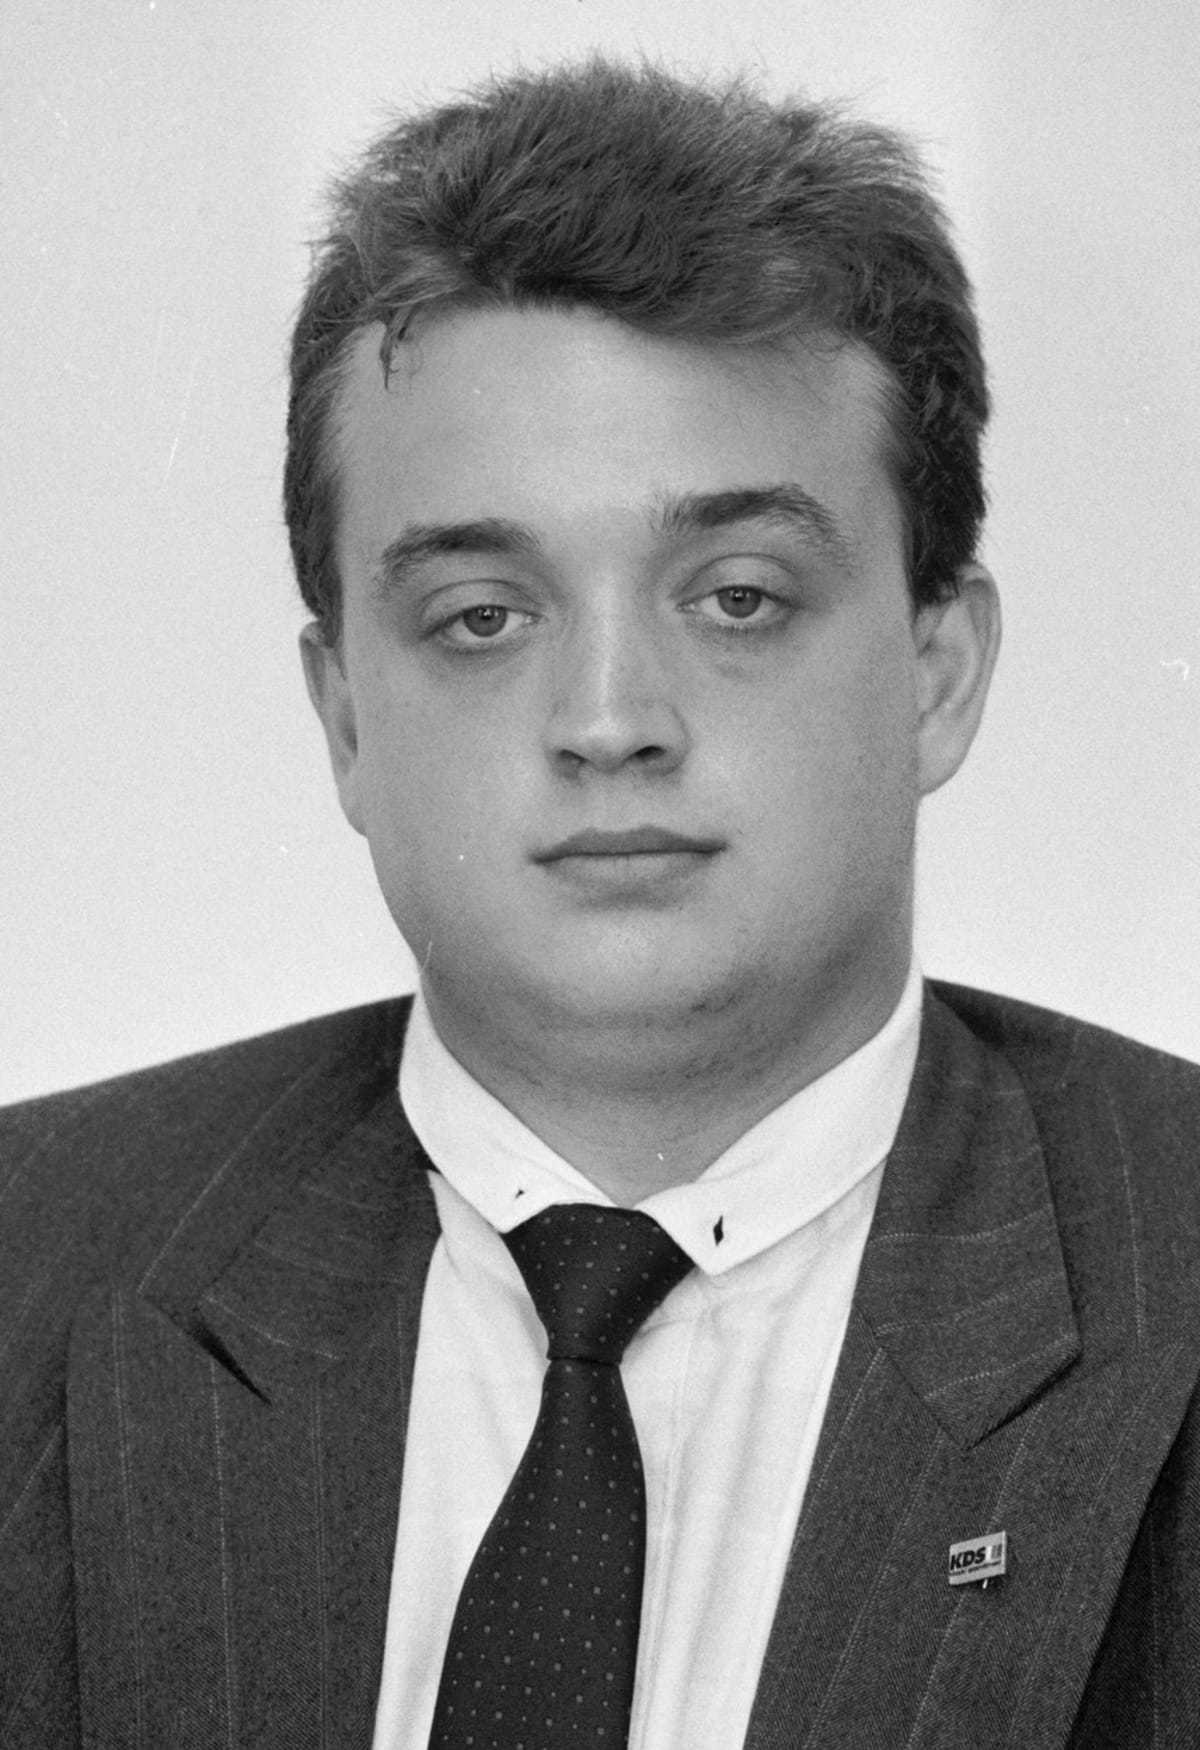 Poslanec České národní rady Marek Benda na snímku z roku 1992